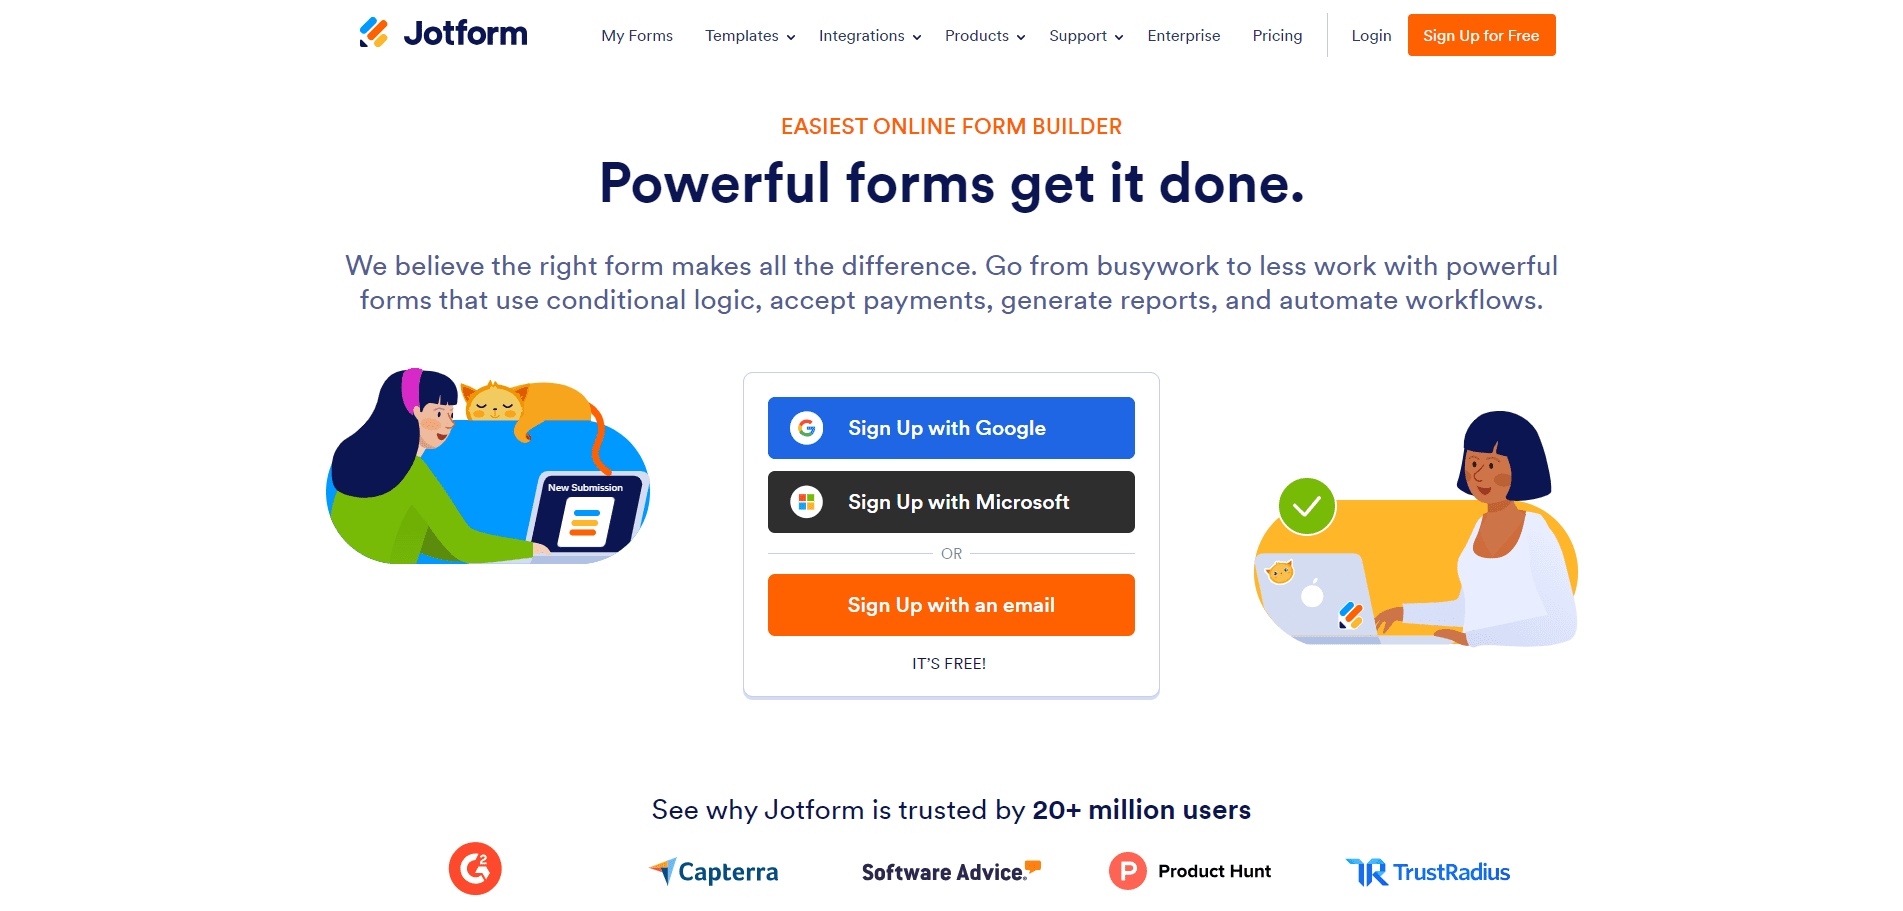 Jotform's homepage